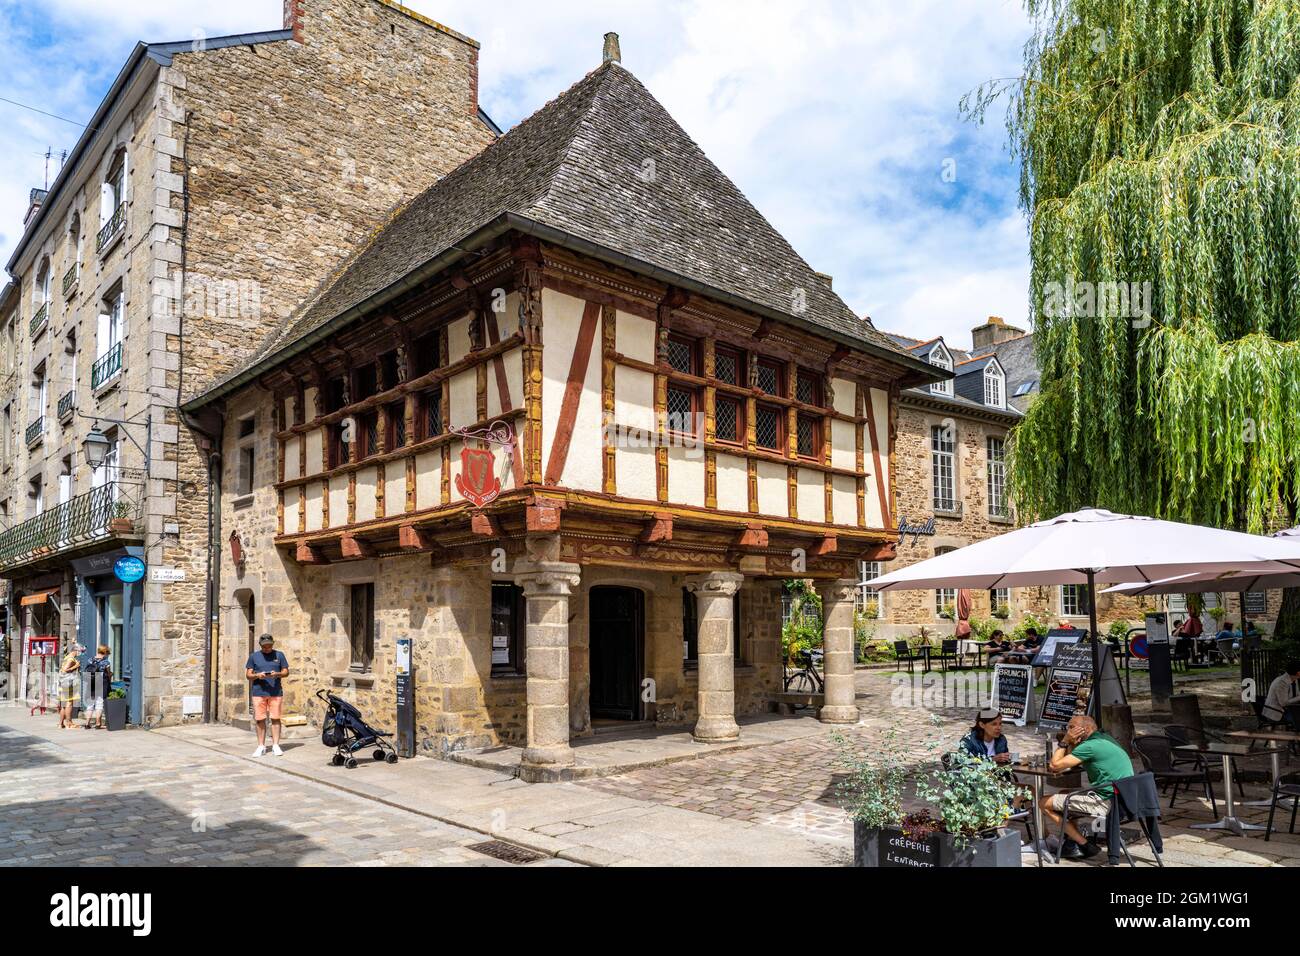 Fachwerk in der historischen Altstadt von Dinan, Bretagne, Frankreich | Fachwerkhaus im historischen Stadtzentrum, Dinan, Bretagne, Frankreich Stockfoto